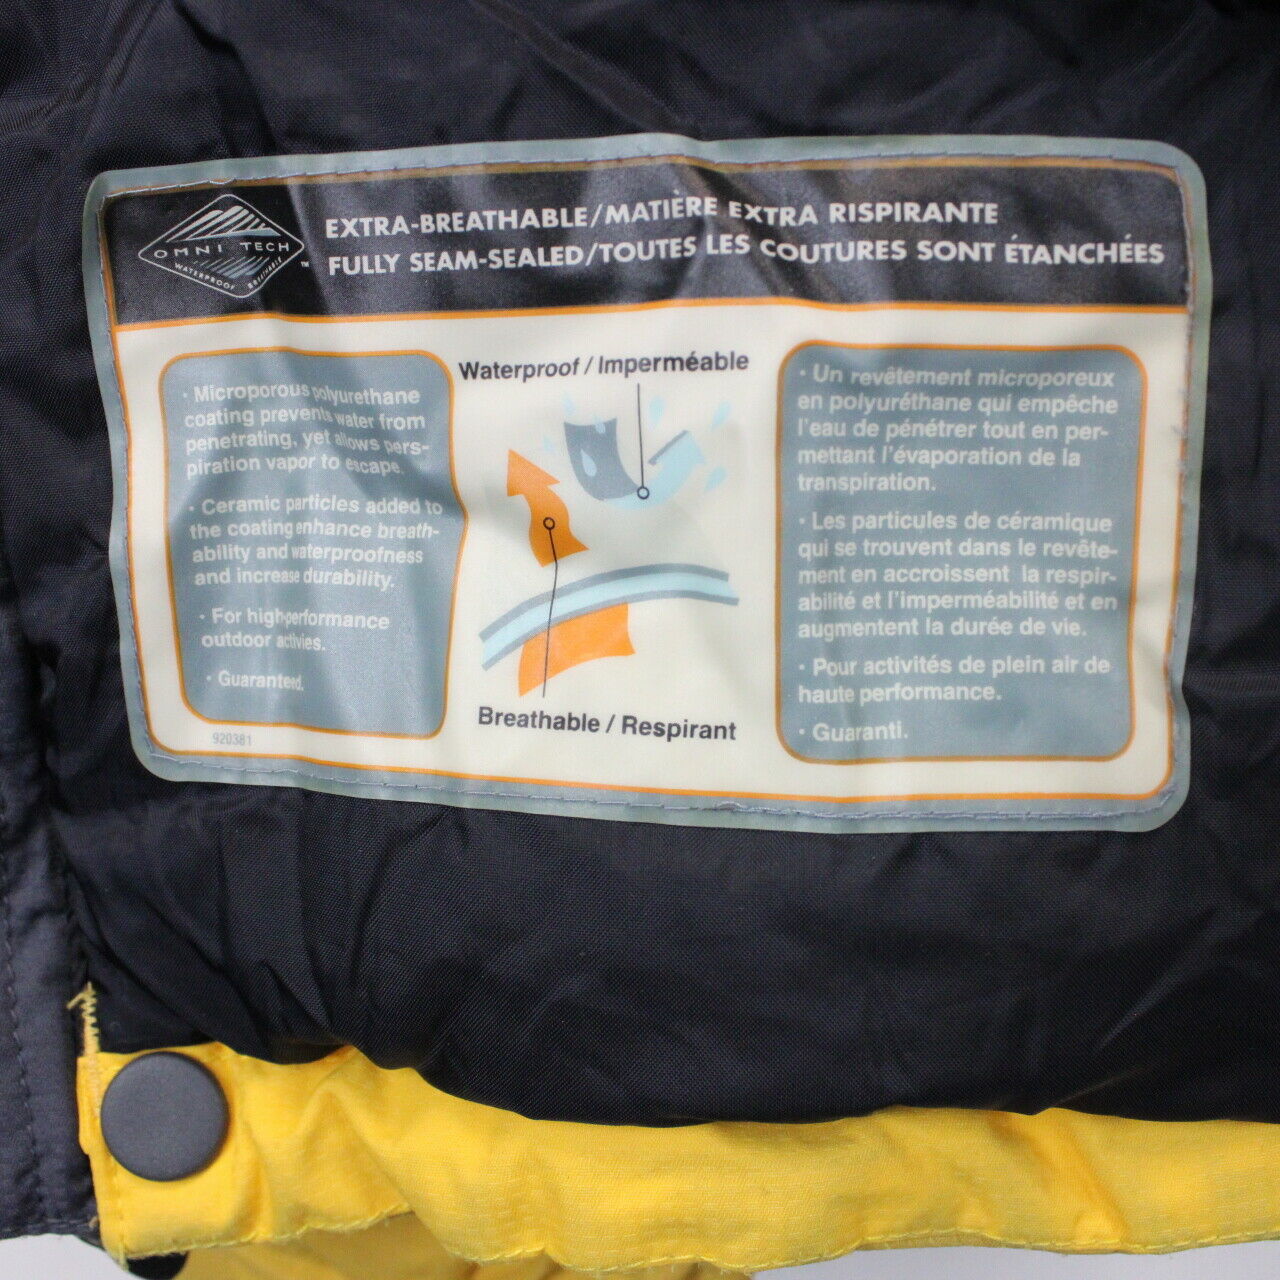 COLUMBIA 00s Jacket Yellow | XL